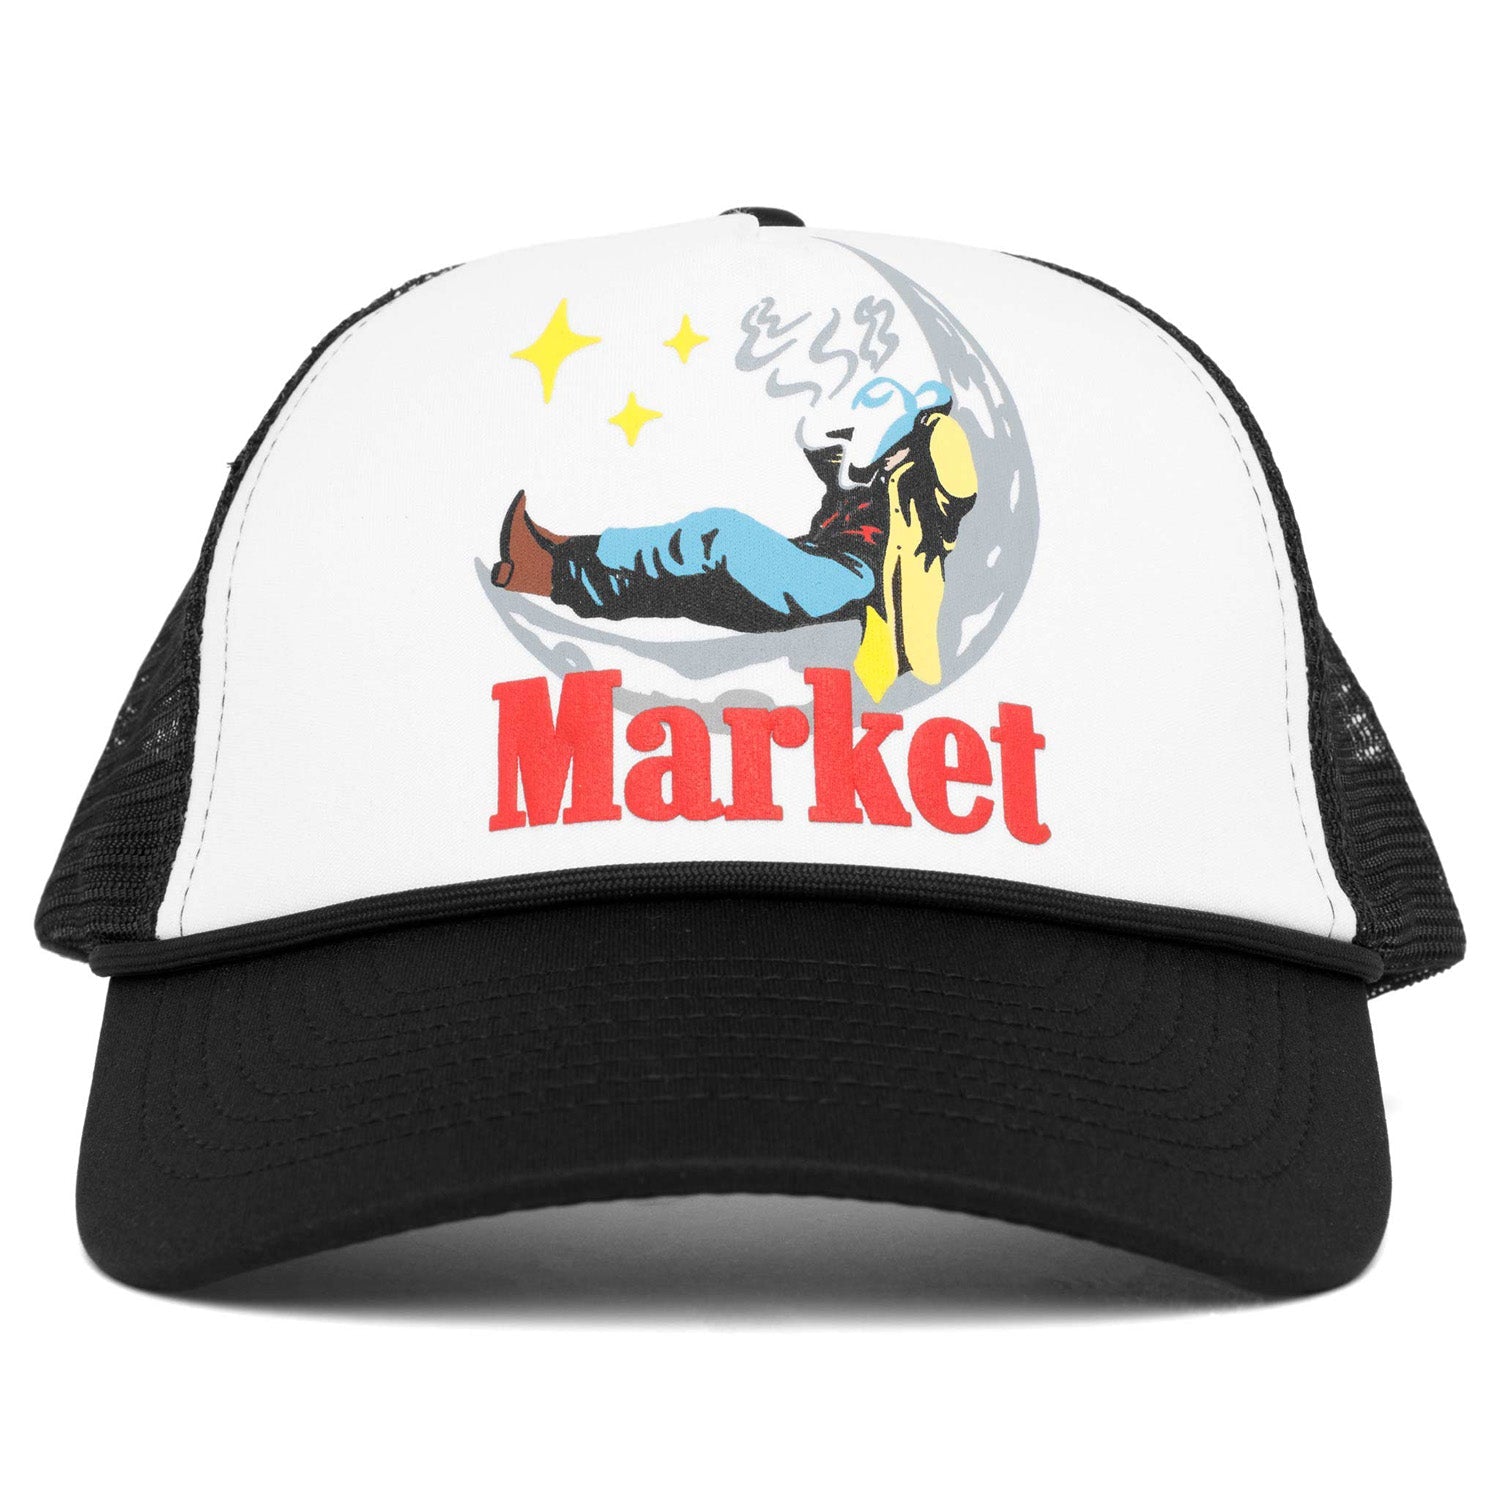 Market Man On Moon Trucket Rambler Hat Black - HEADWEAR - Canada